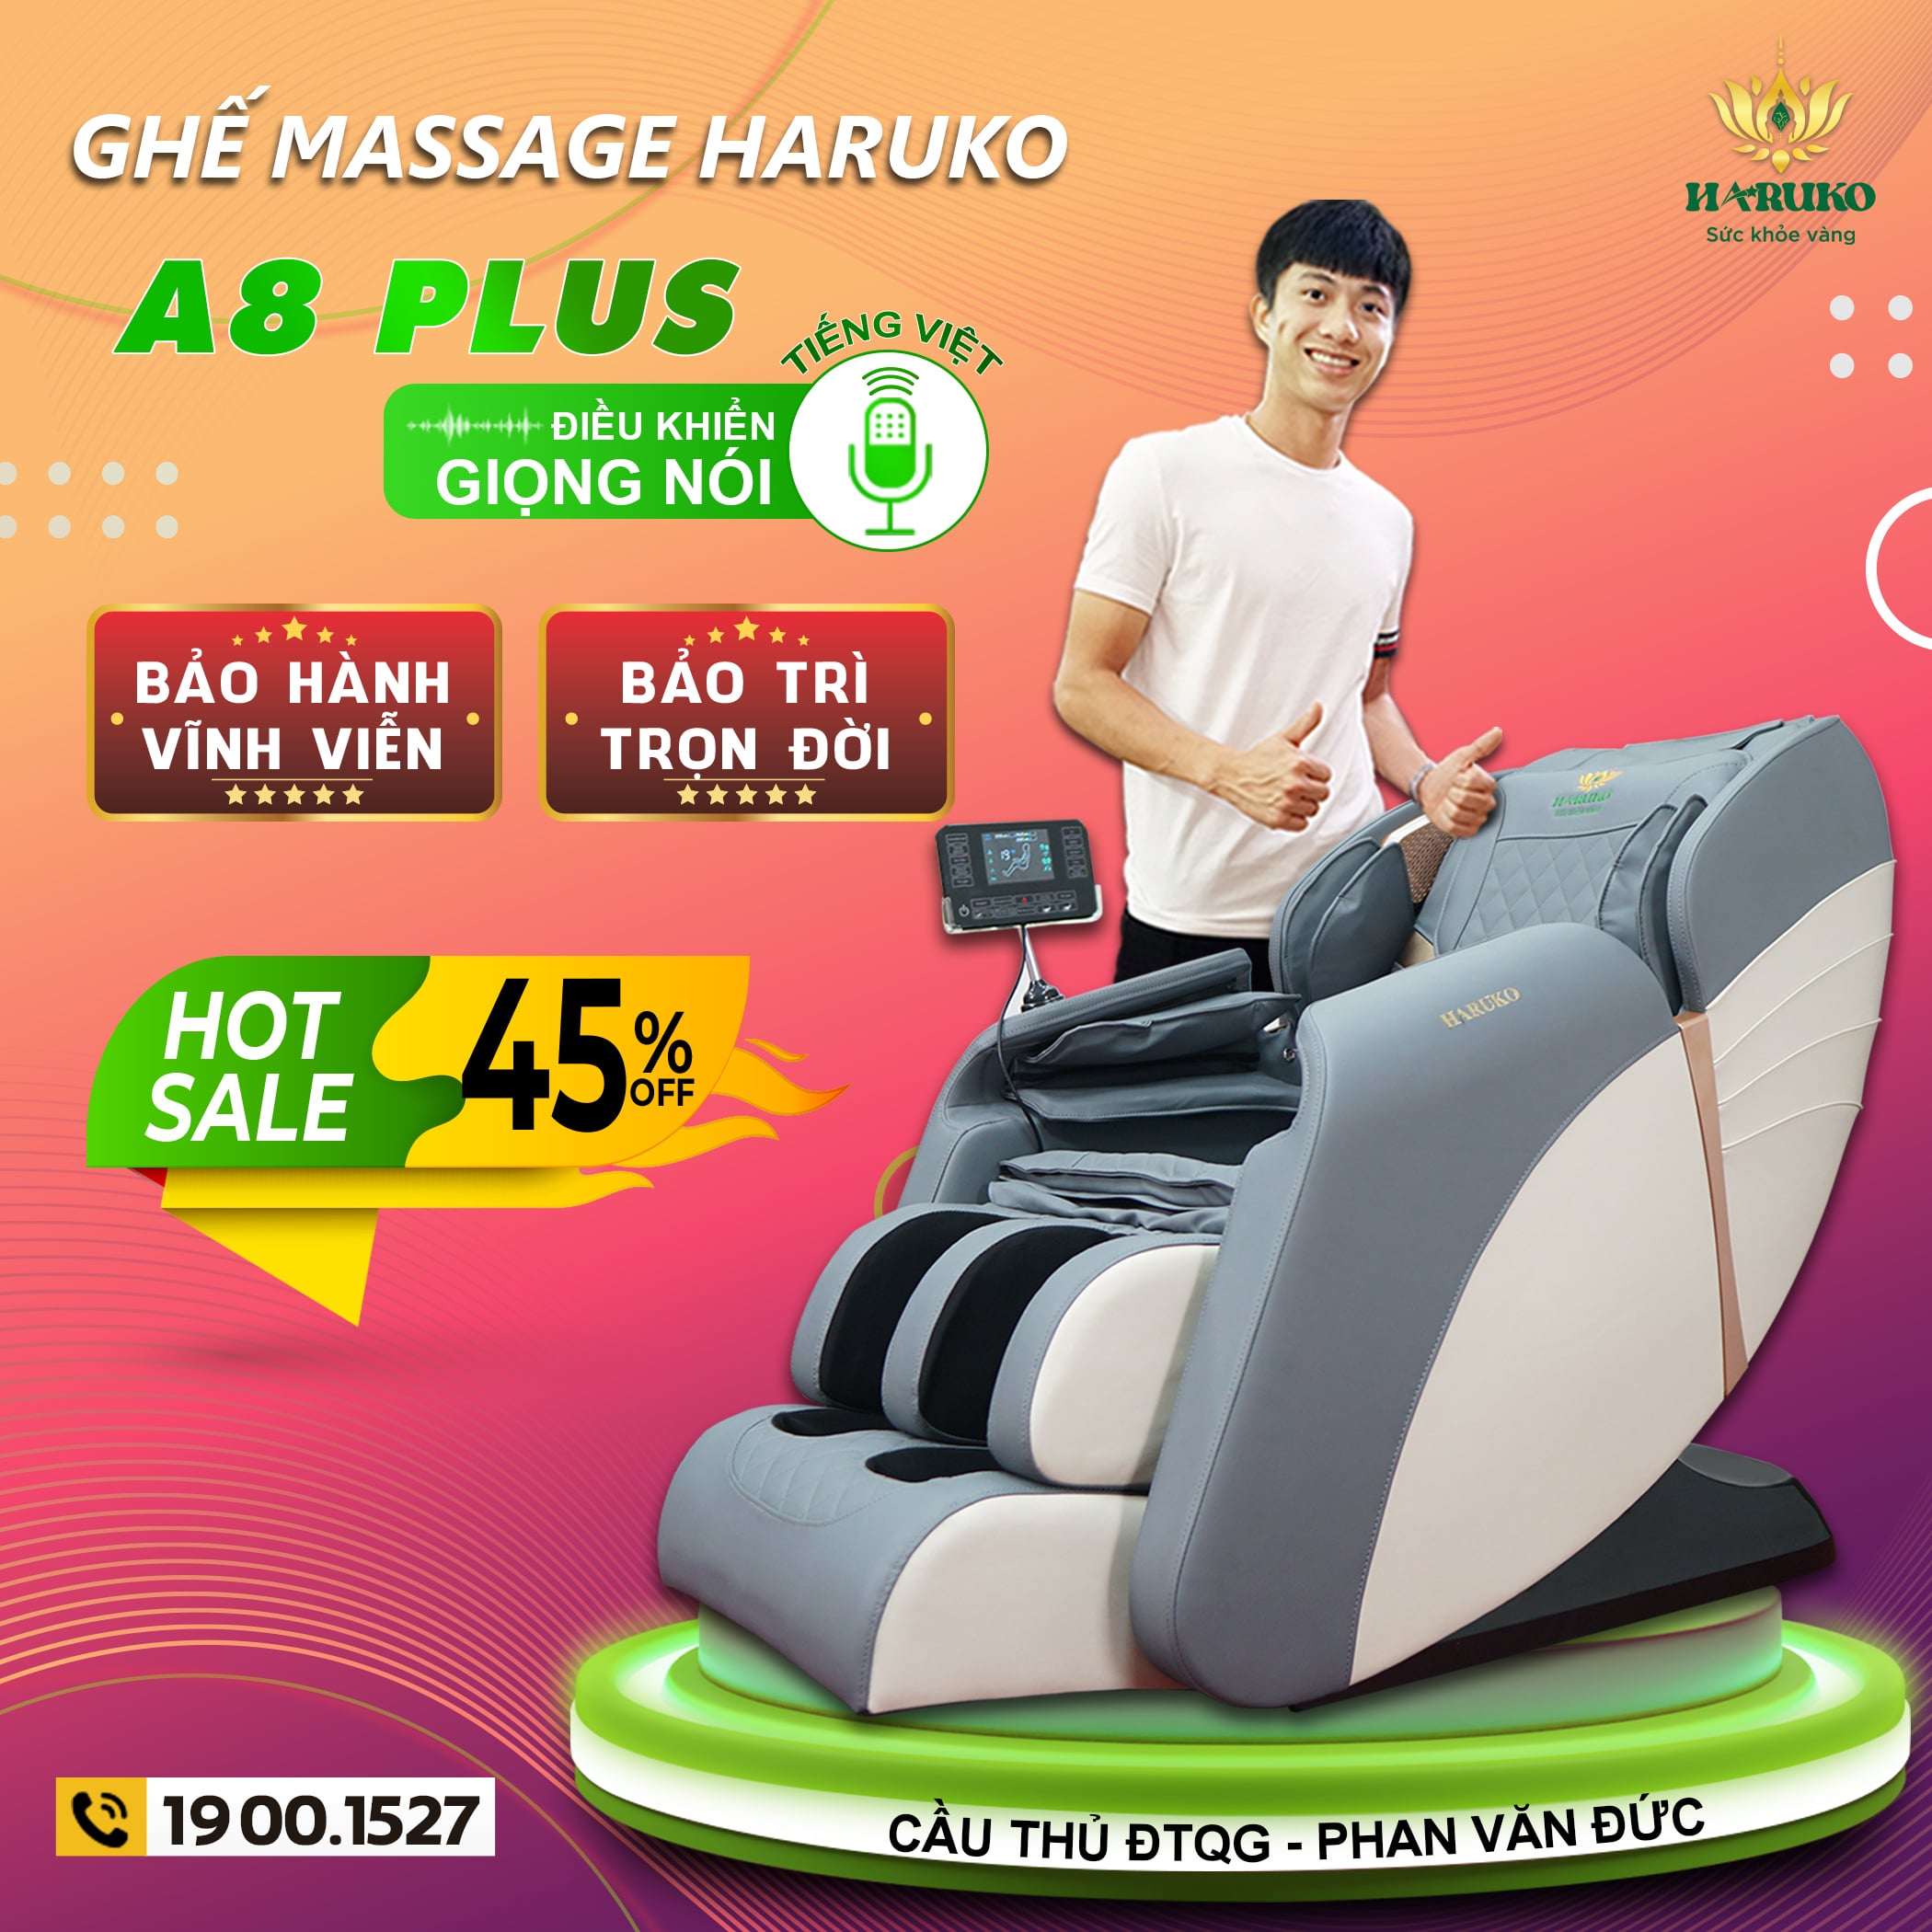 Ghế massage Haruko-A8 plus sở hữu tính năng điều khiển bằng giọng nói được hỗ trợ bởi công nghệ AI hiện đại